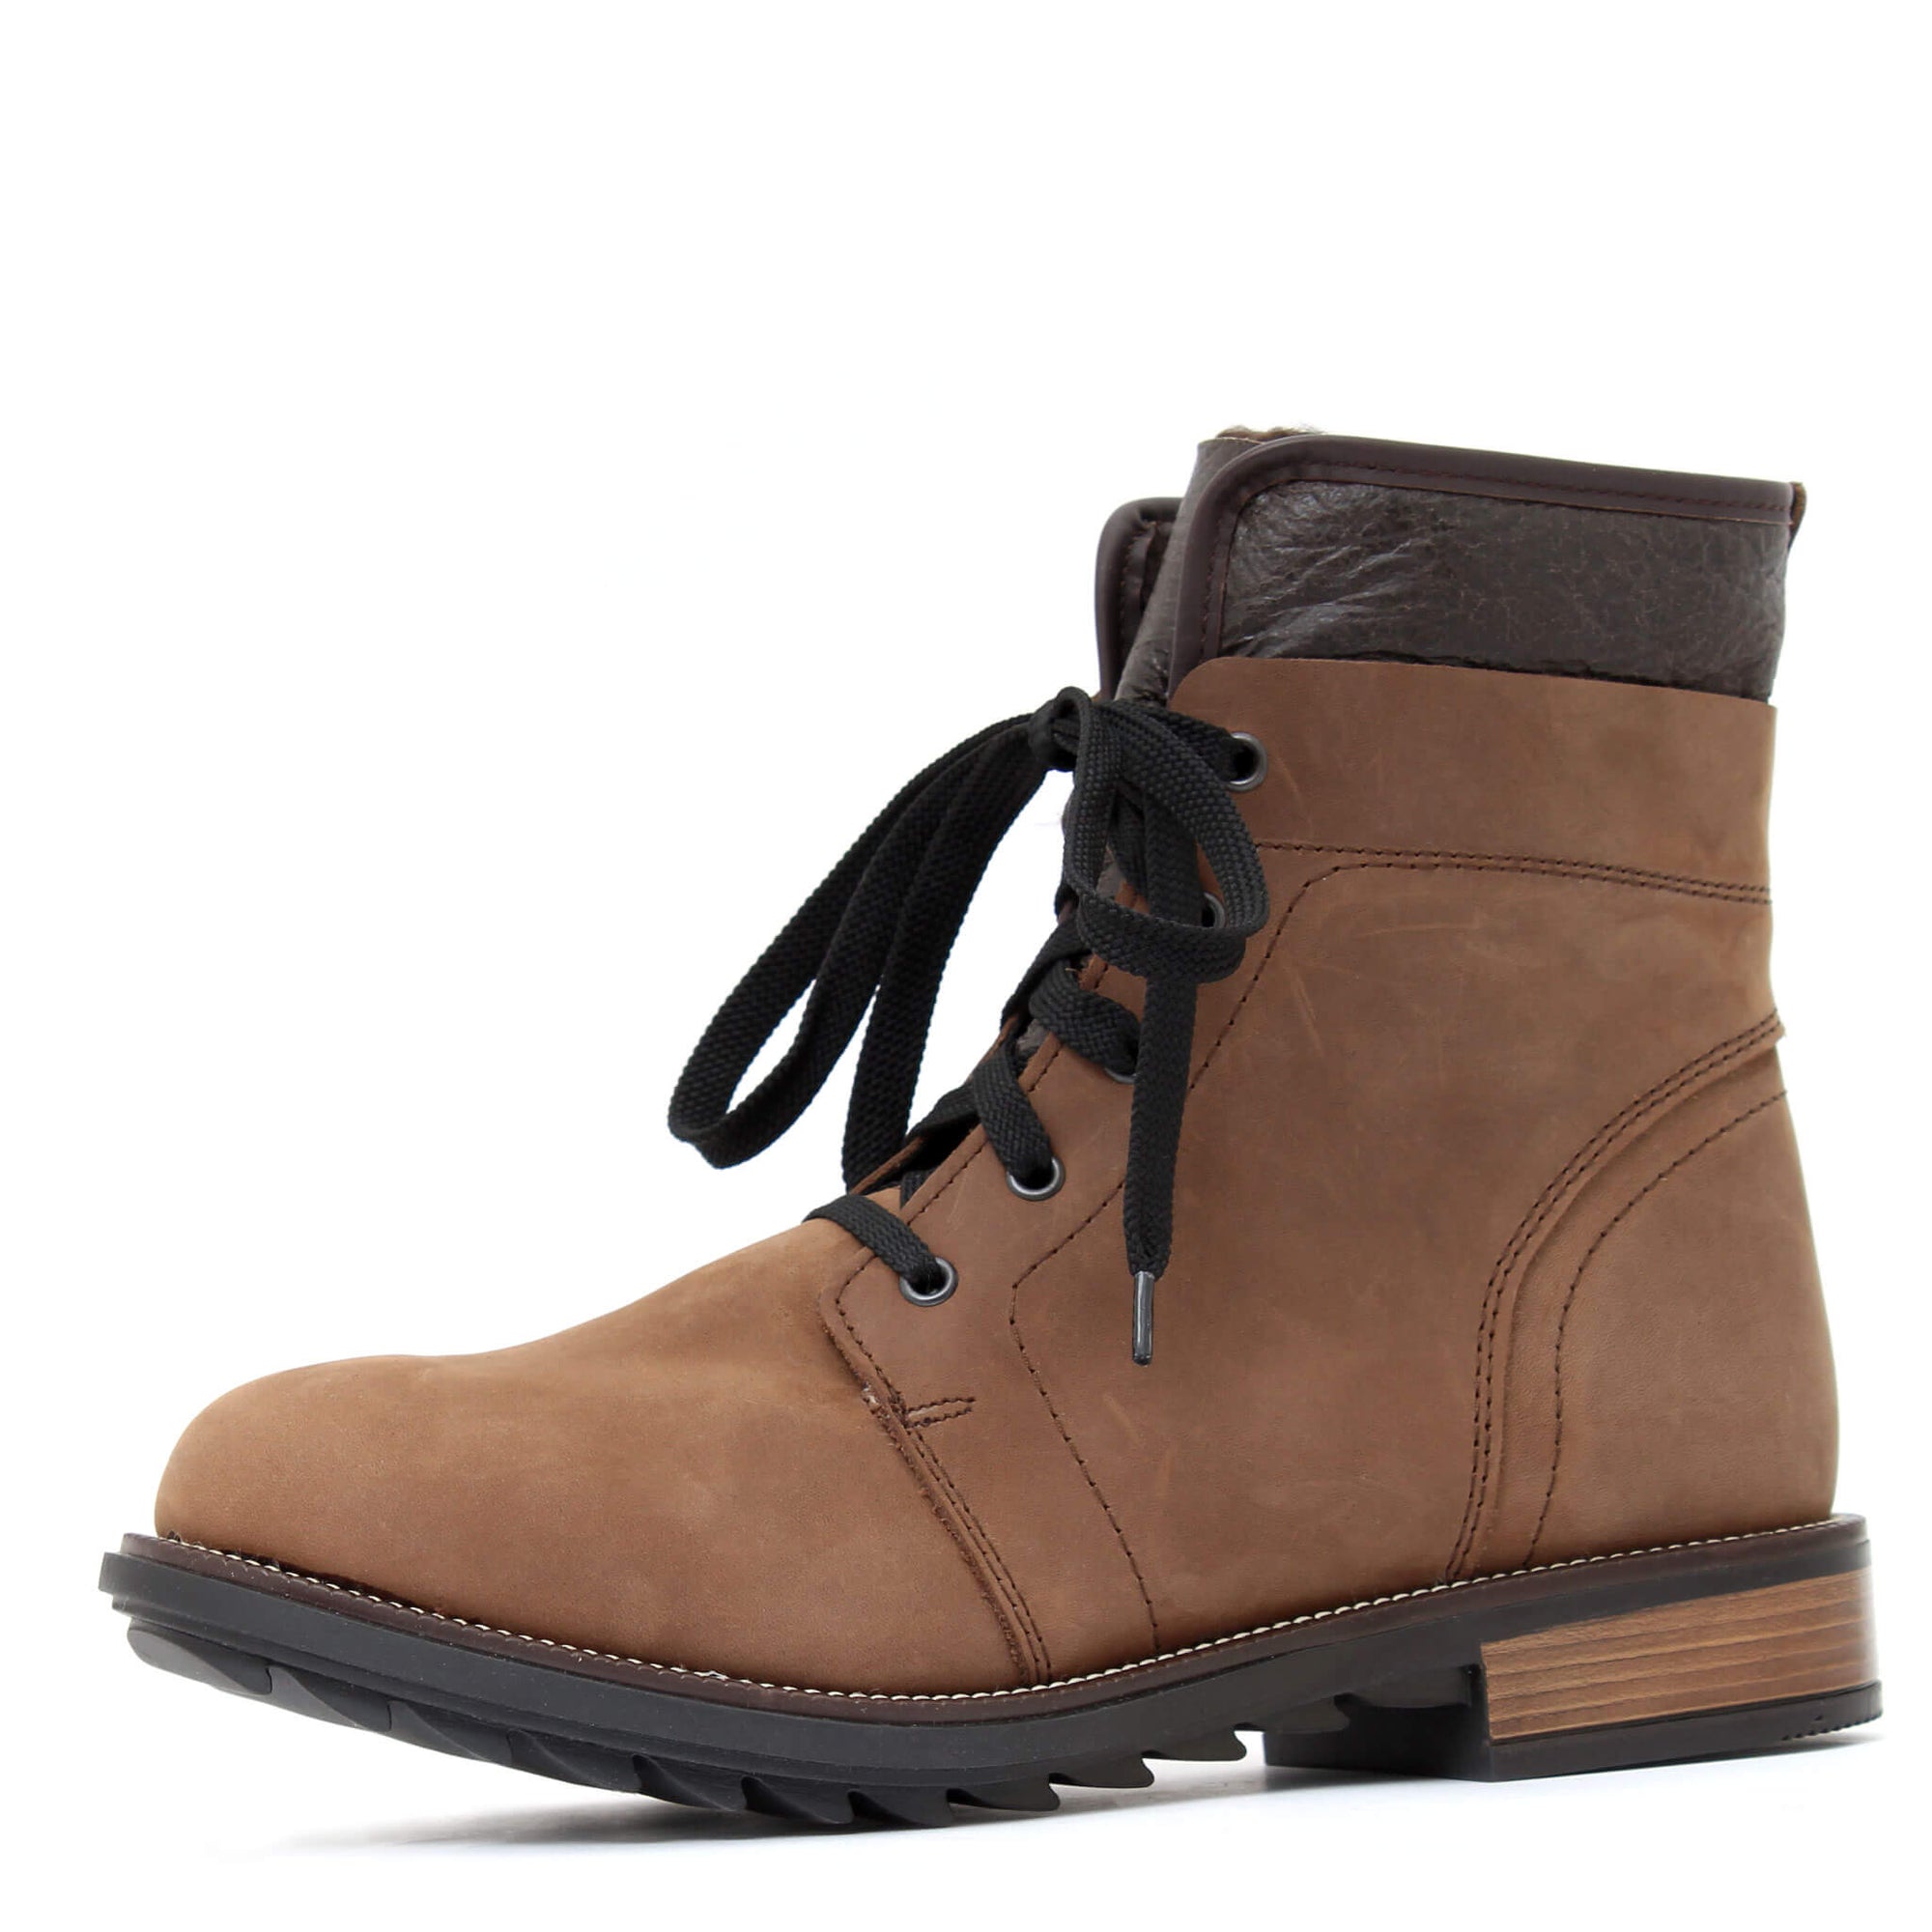 Malt Tan Winter Boot for Men